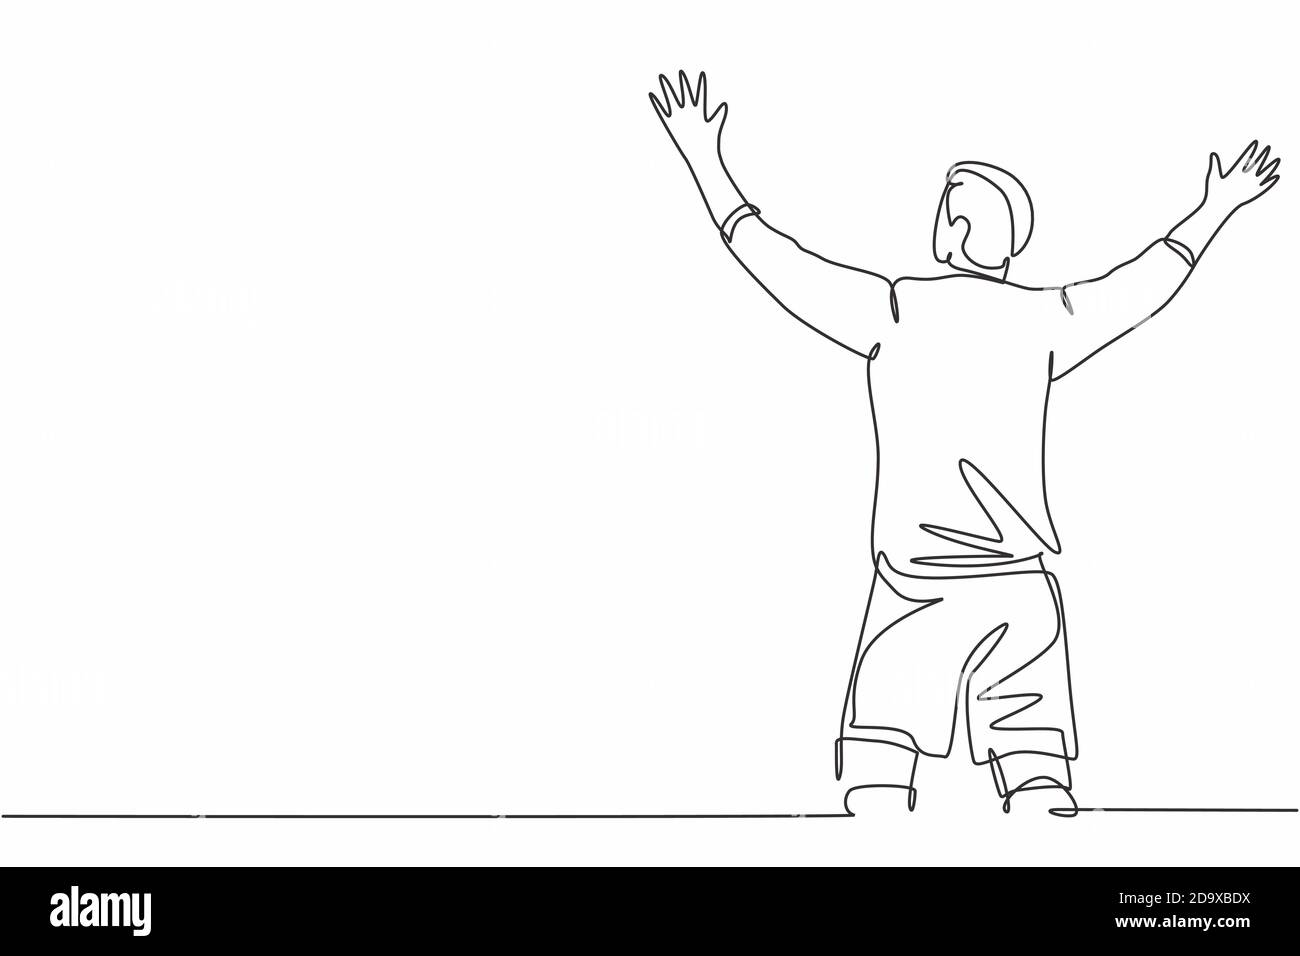 Un disegno continuo di un giovane giocatore di calcio sportivo che si stenderà le braccia e urla forte sul campo. Concetto di celebrazione del punteggio di goal Match Illustrazione Vettoriale